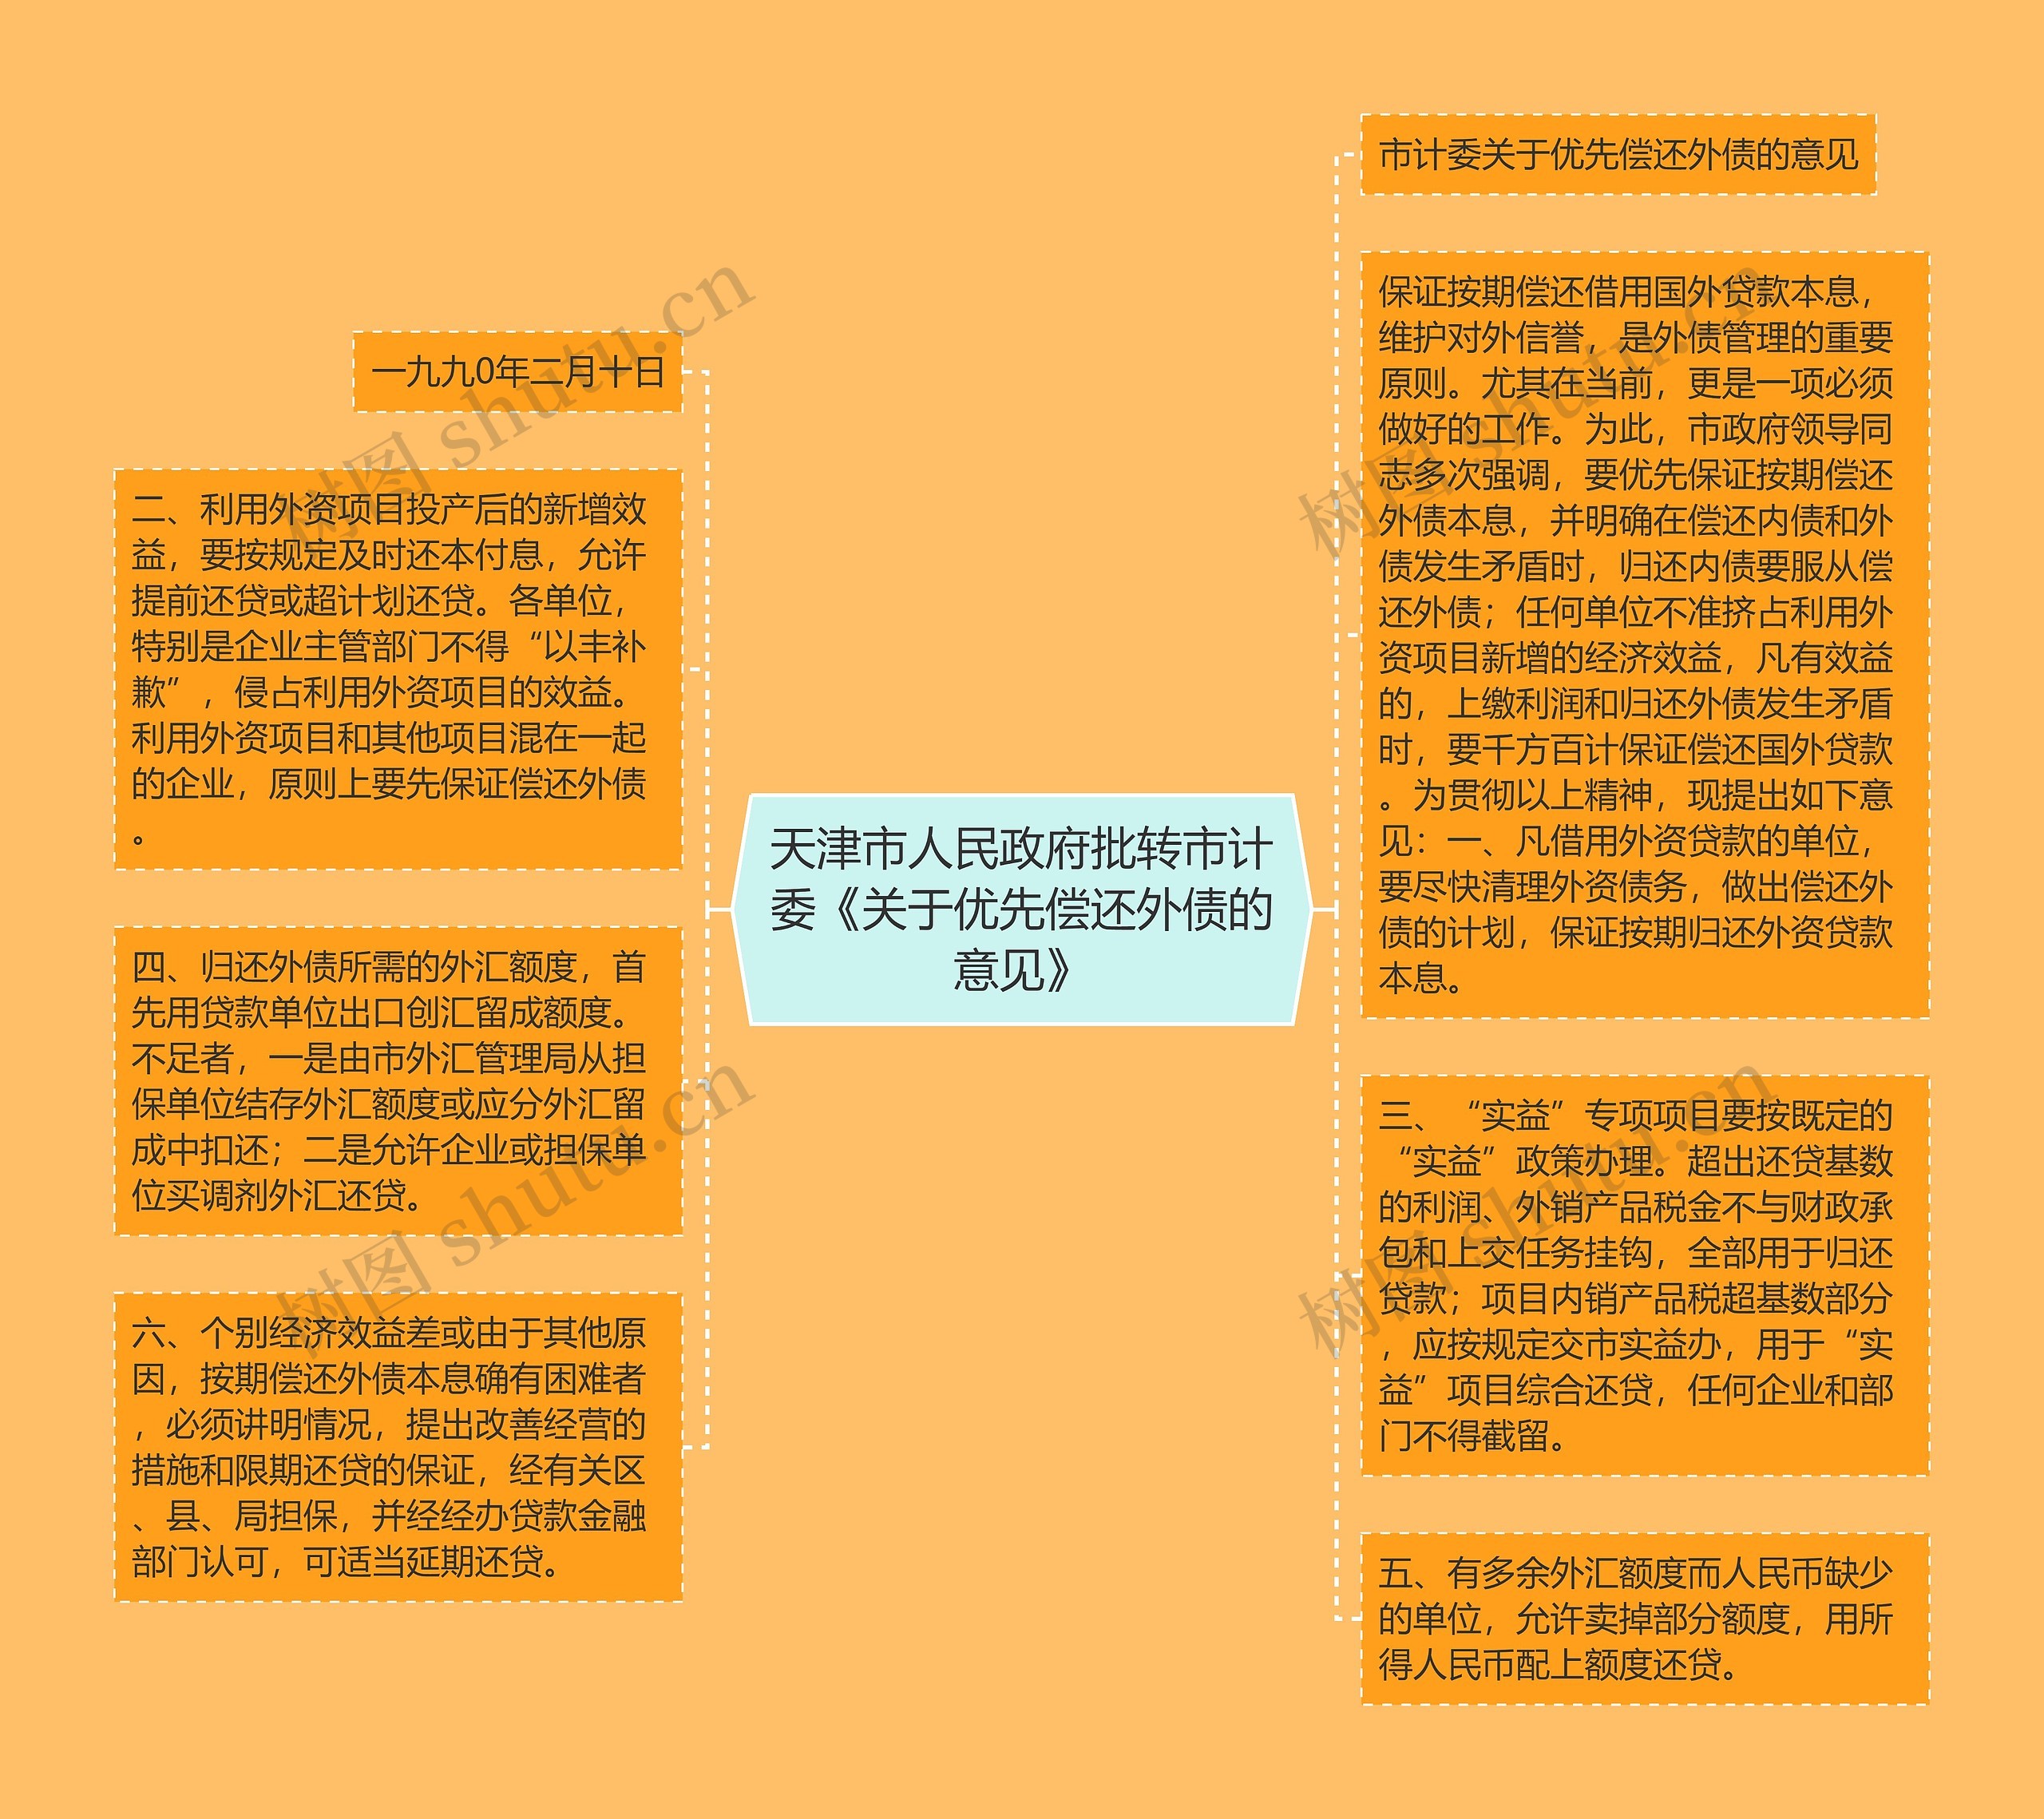 天津市人民政府批转市计委《关于优先偿还外债的意见》